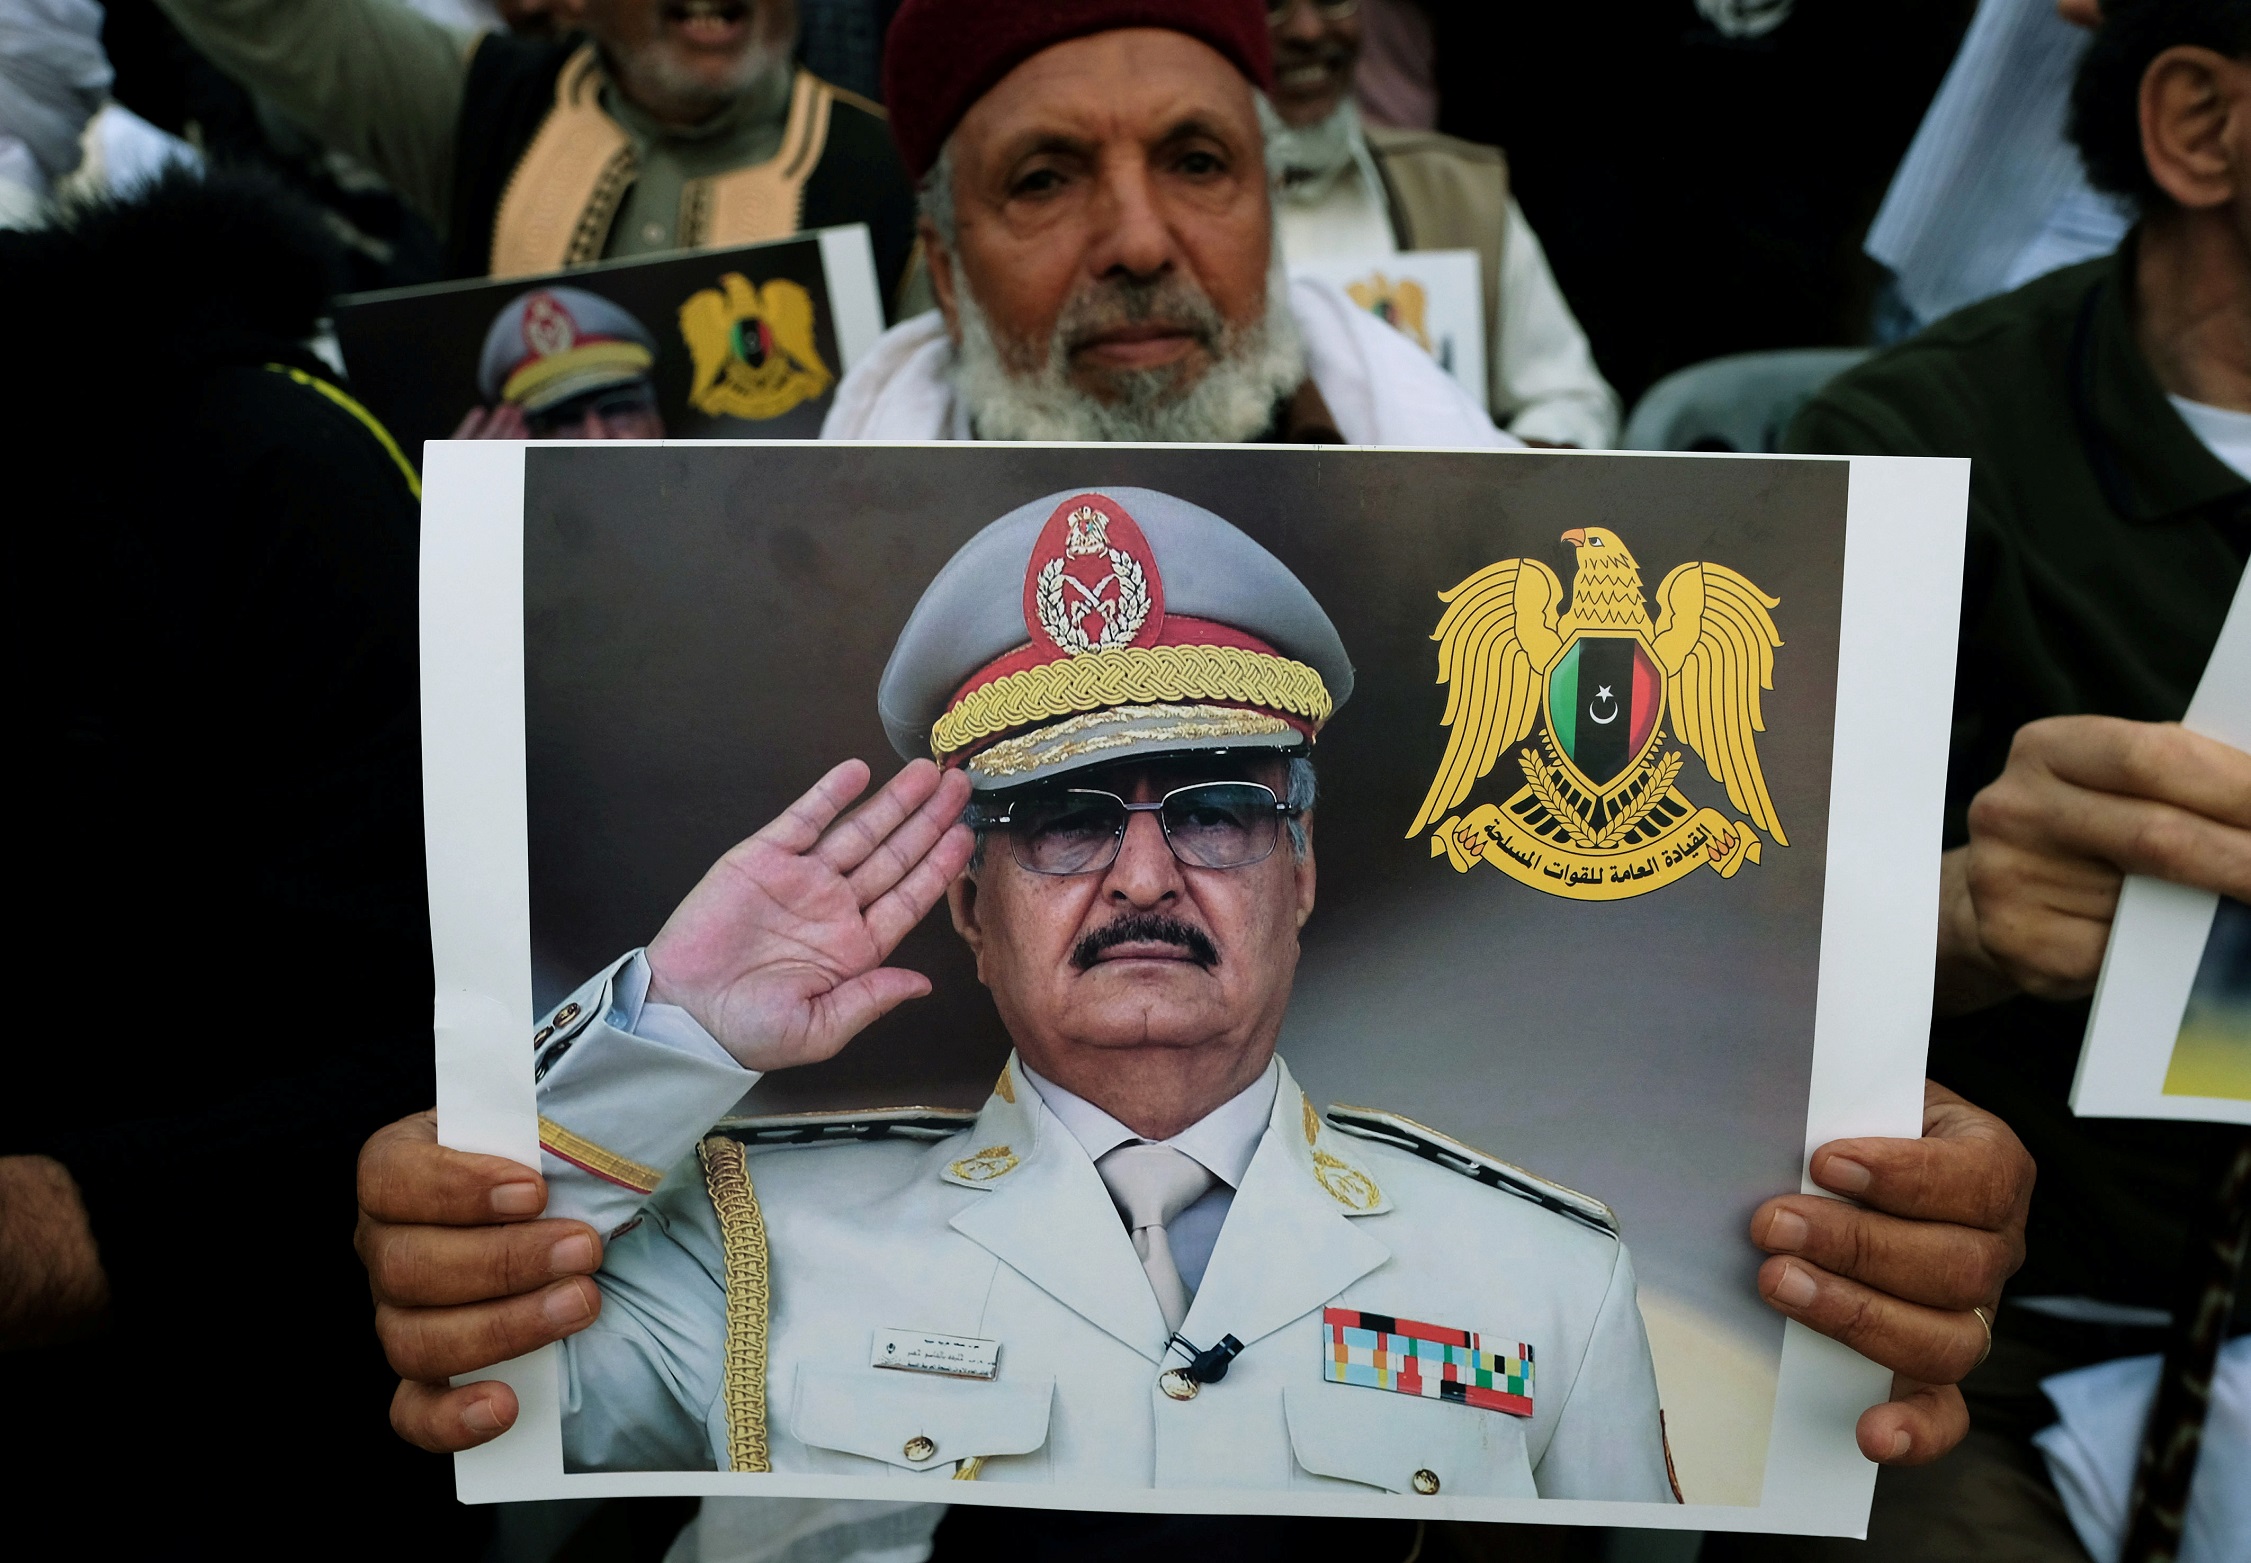 صورة للمشير الليبي خليفة حفتر خلال مظاهرة في بنغازي تدعم قوات المشير، 14 نيسان/أبريل 2019. (رويترز)